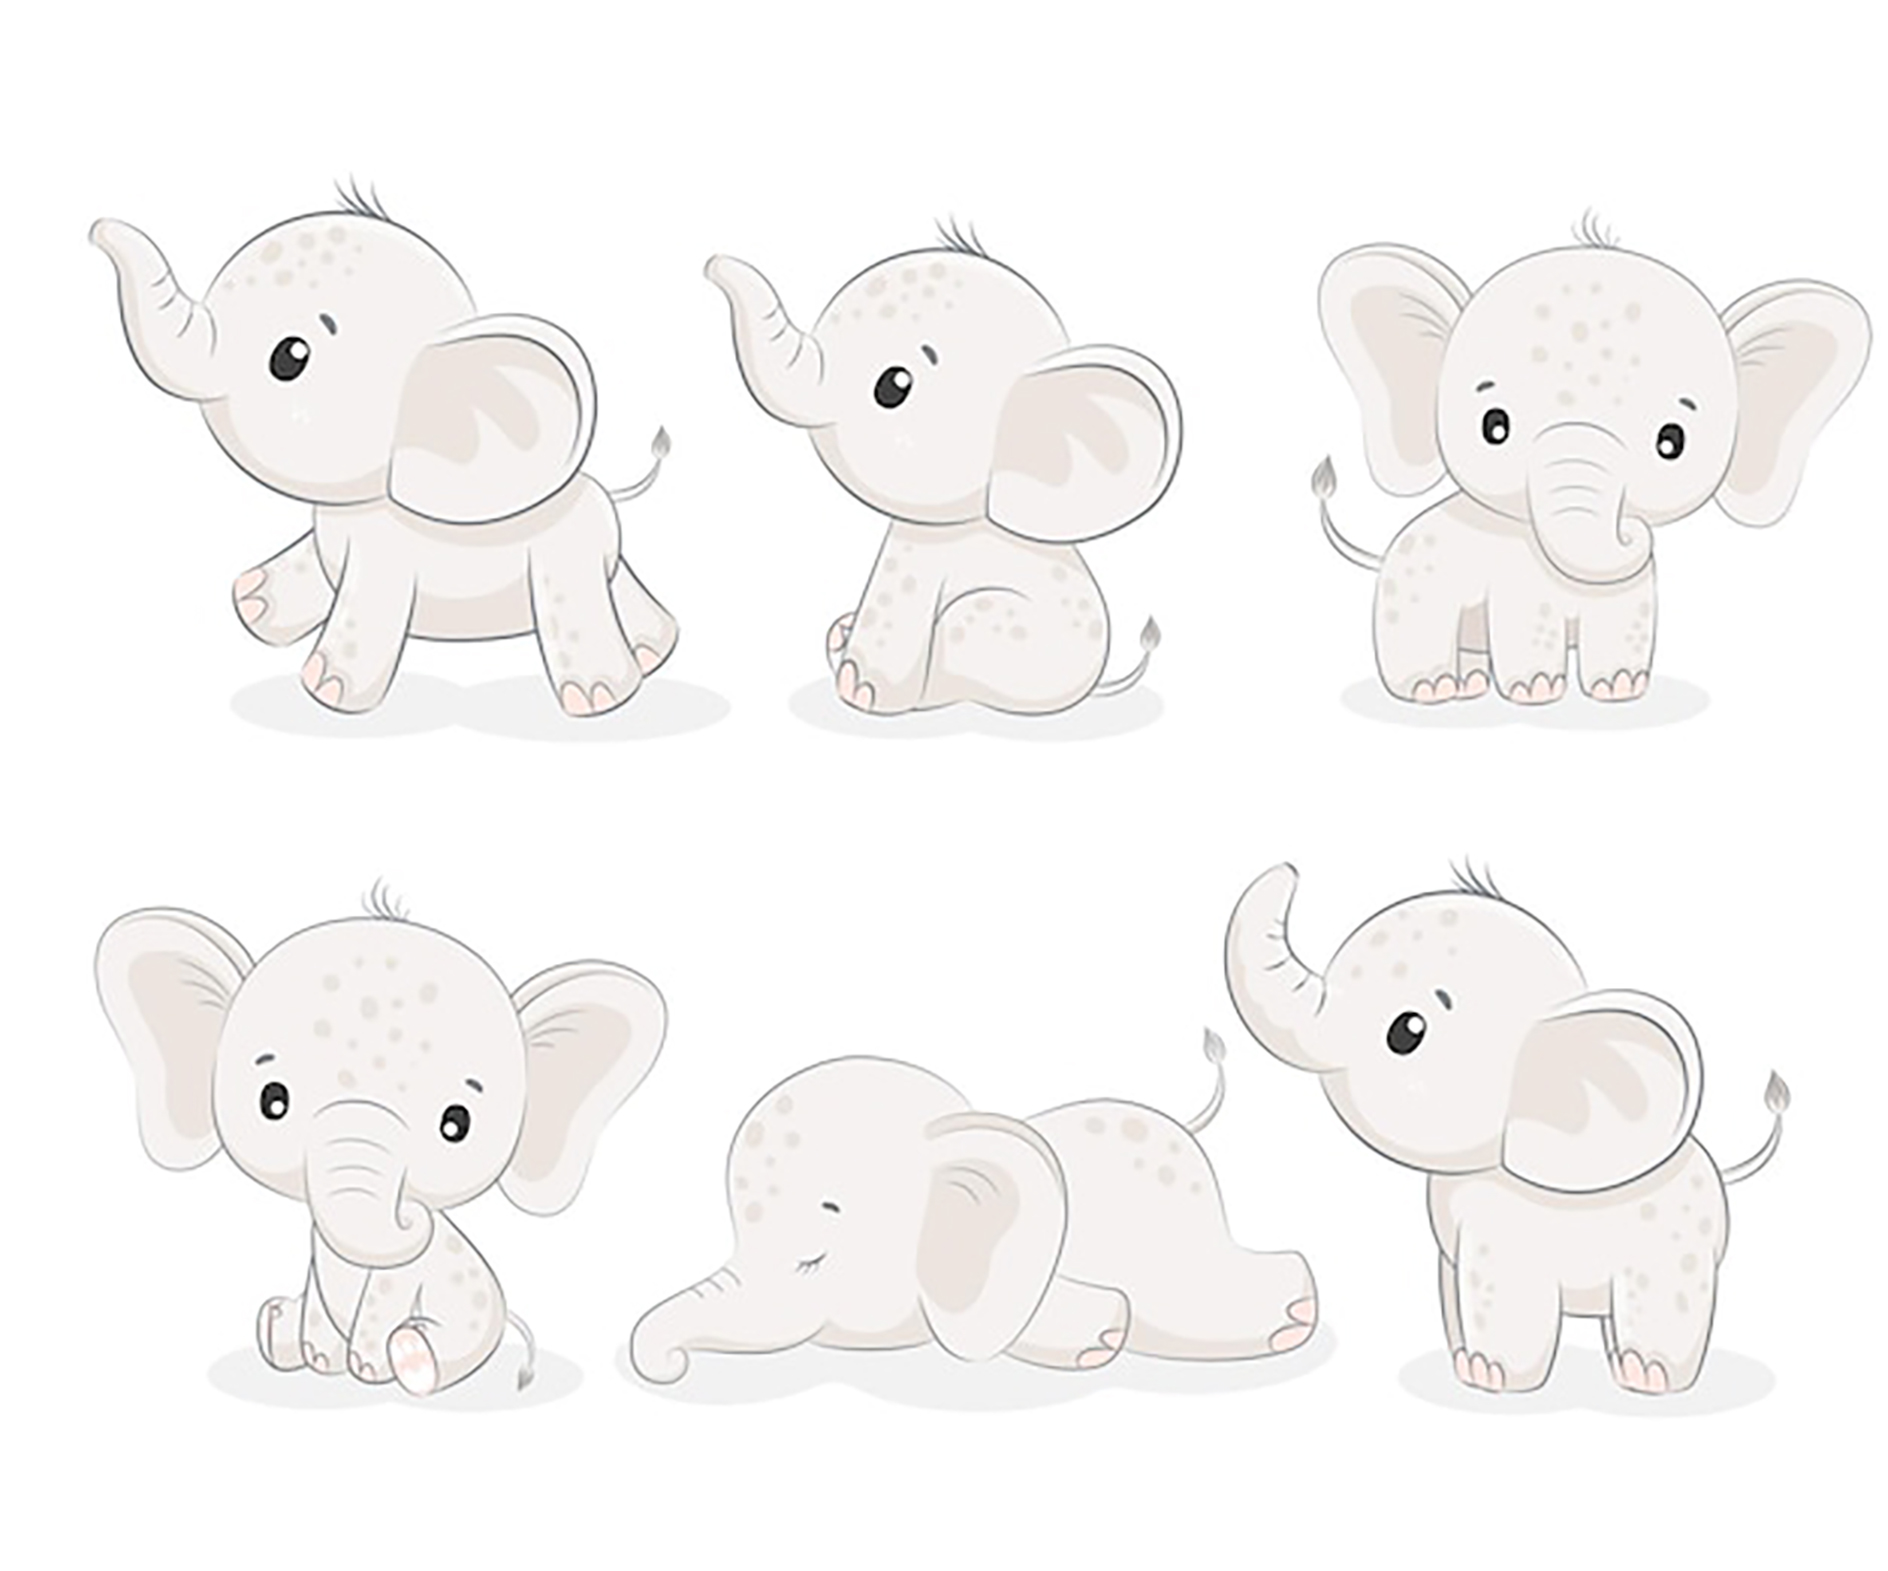 وکتور کارتونی بچه فیل در شش حالت مختلف